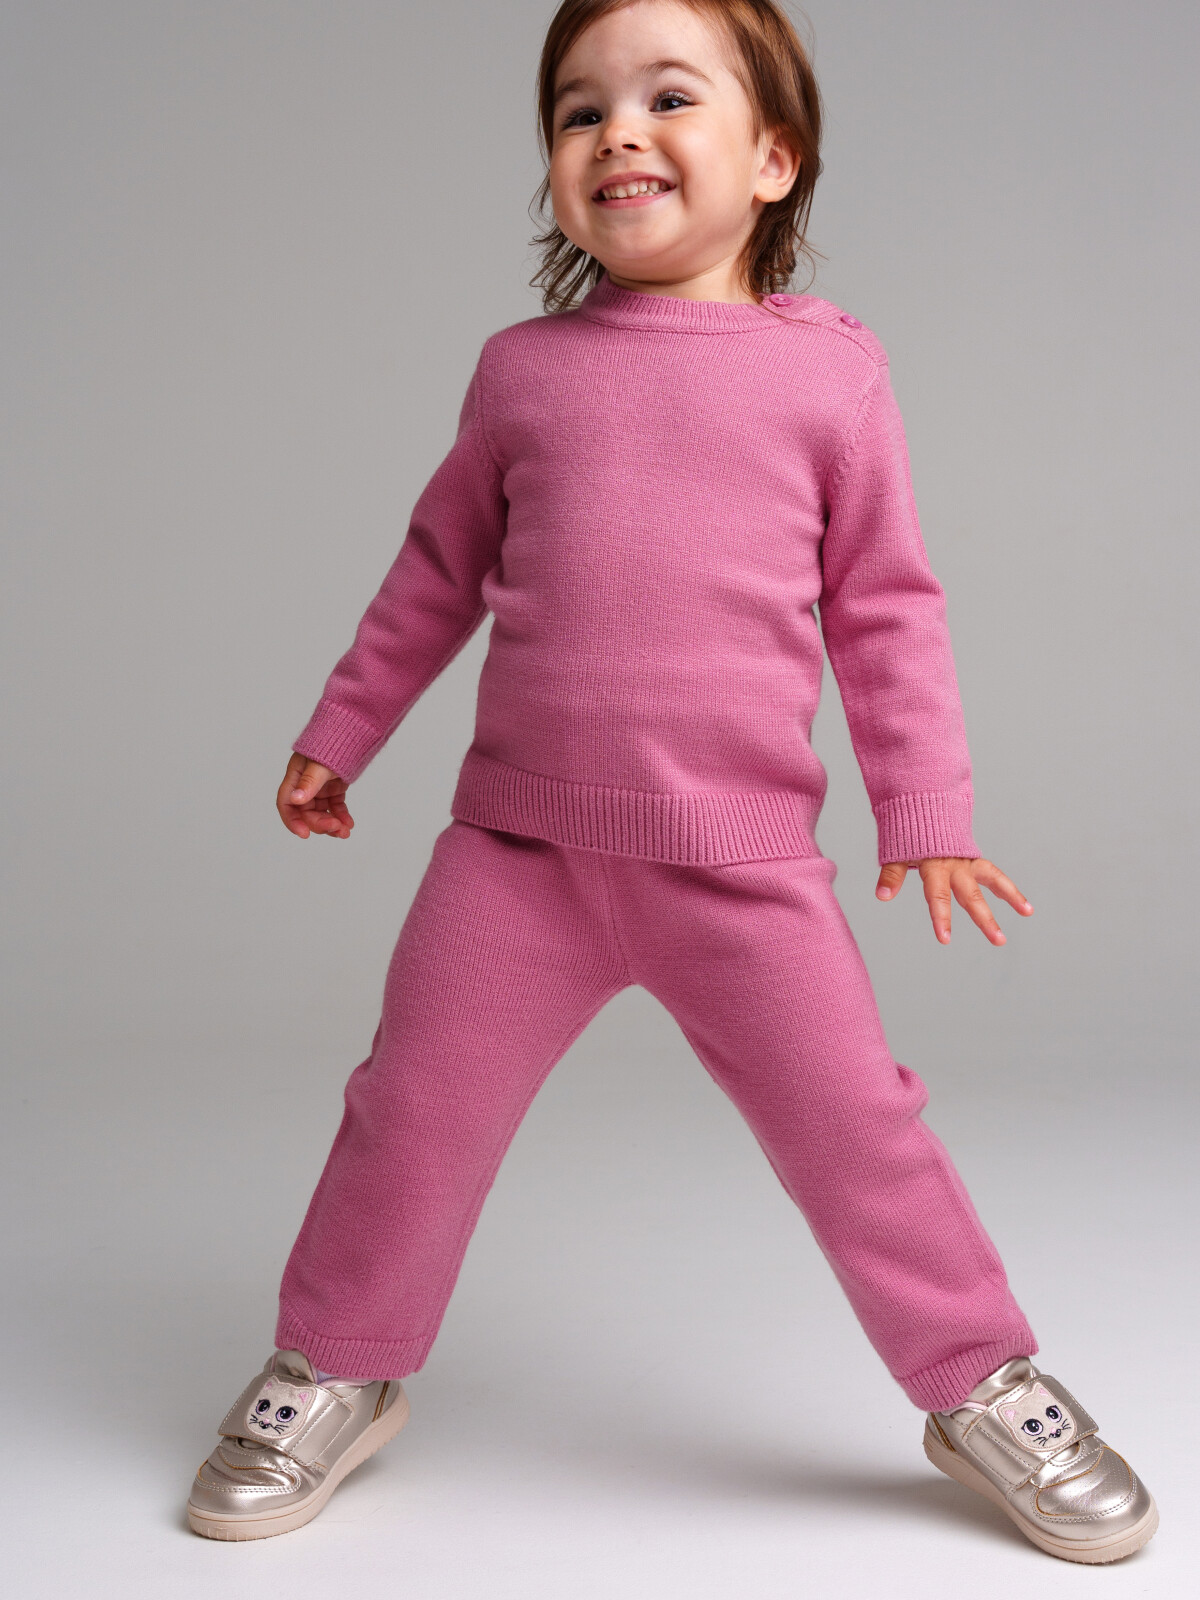 брюки playtoday newborn-baby для девочки, розовые